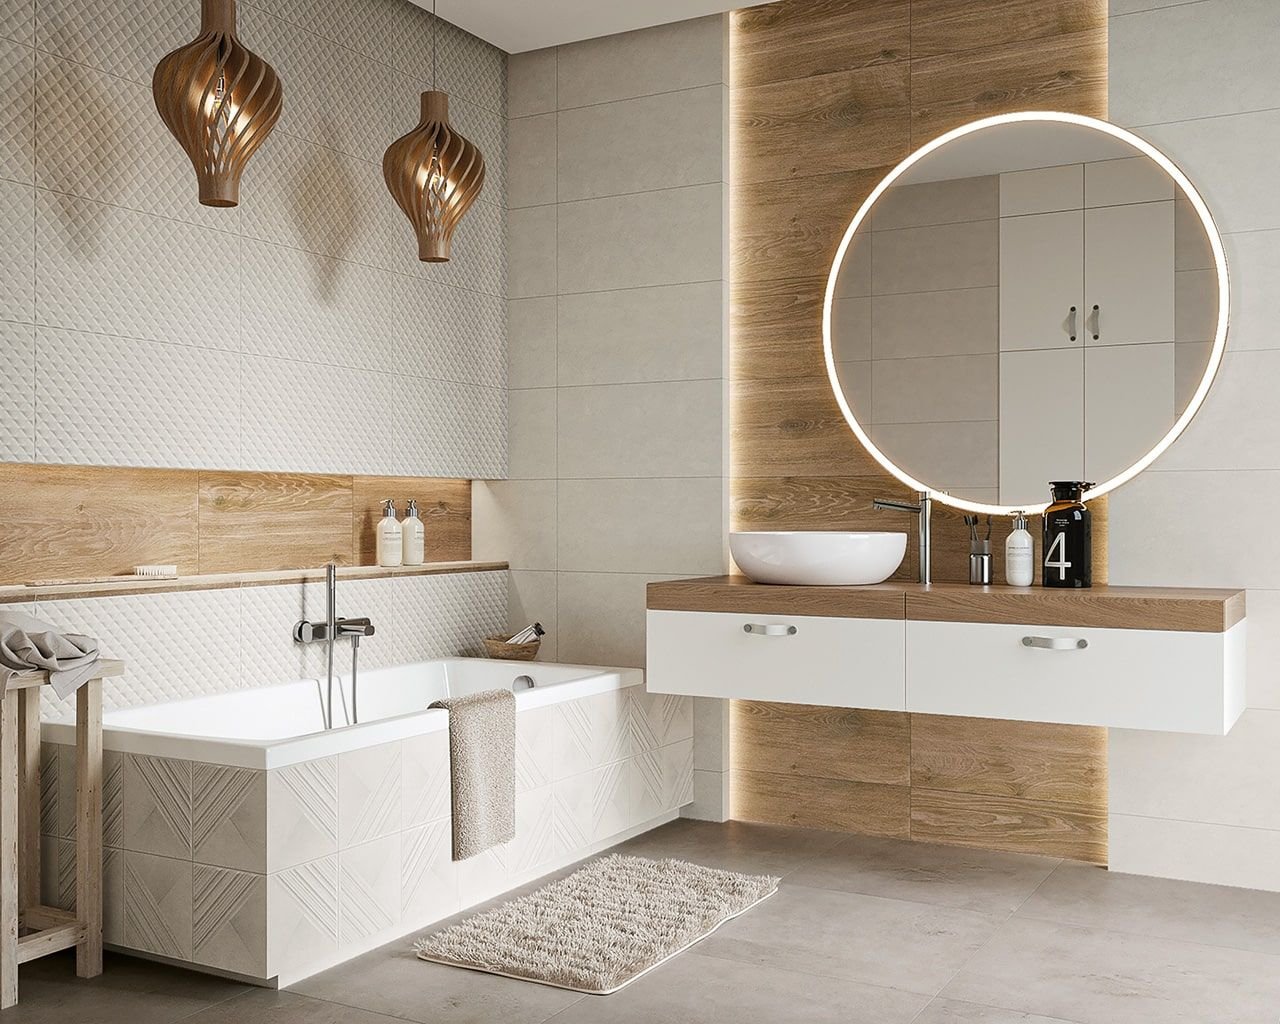 #Koupelna #Minimalistický styl #Moderní styl #Naturální styl #bílá #šedá #Velký formát #Matný obklad #700 - 1000 Kč/m2